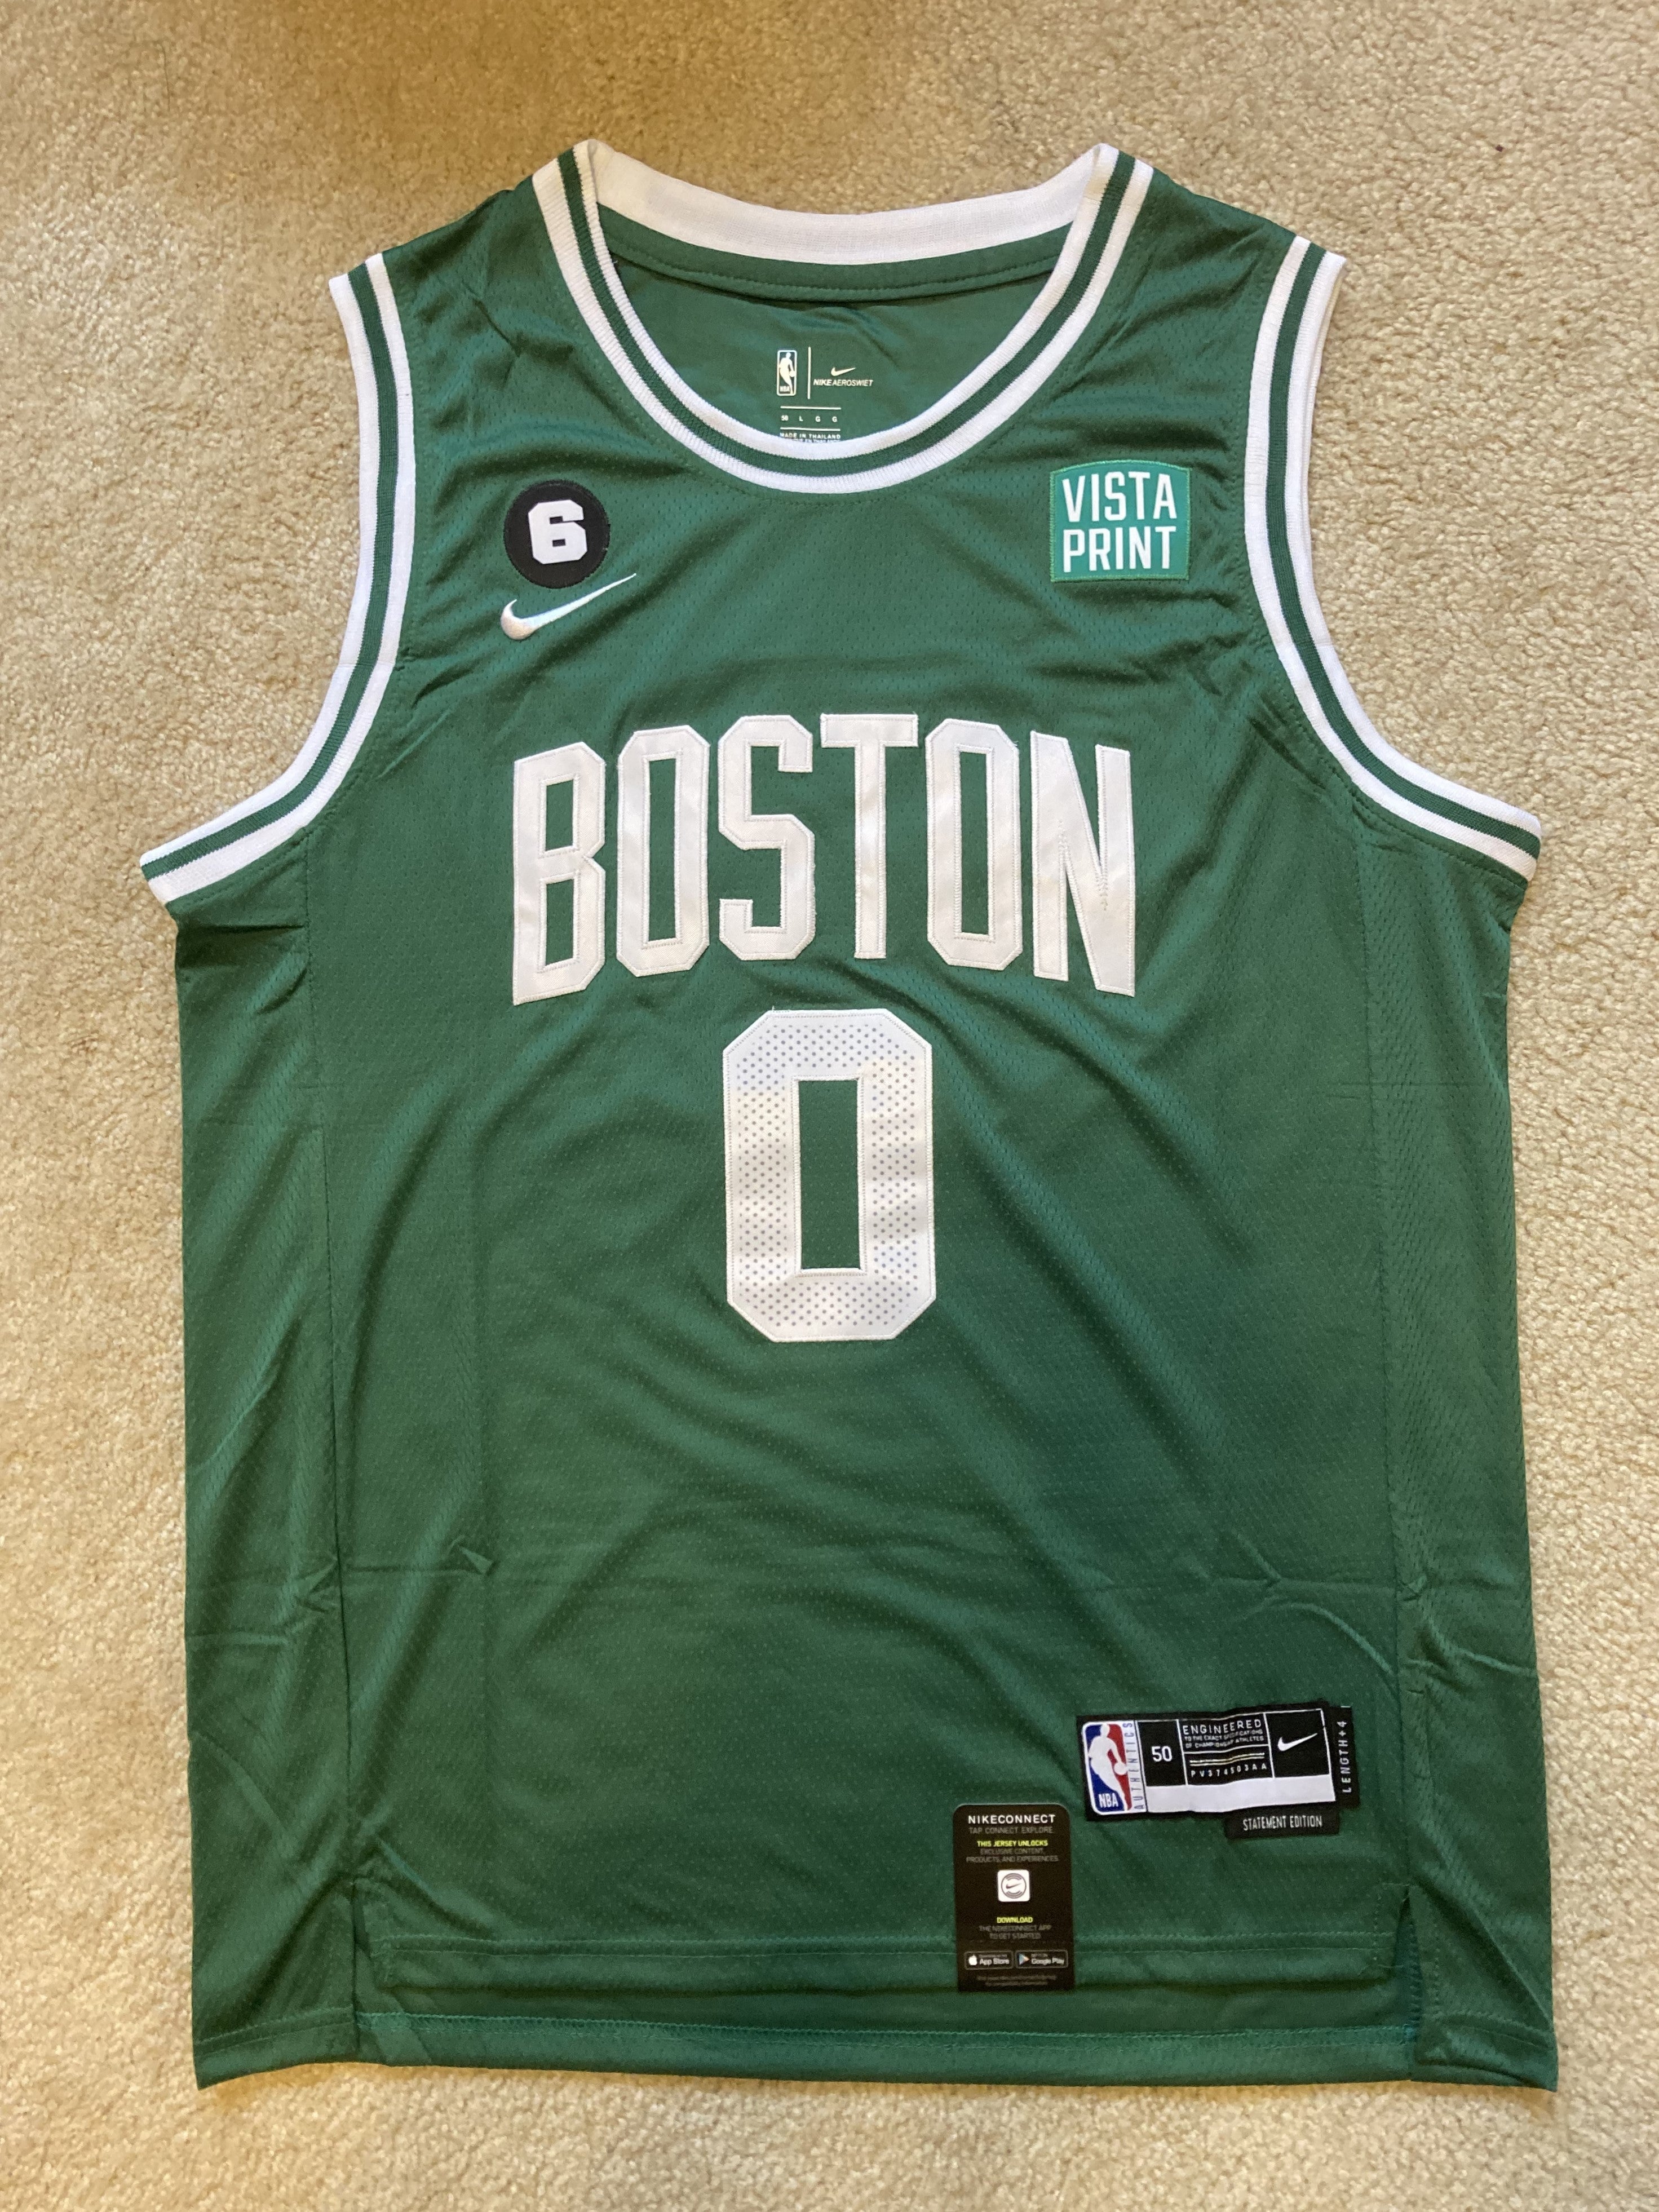 NEW - Mens Stitched Nike NBA Jersey - Jayson Tatum - Celtics - XL - Green